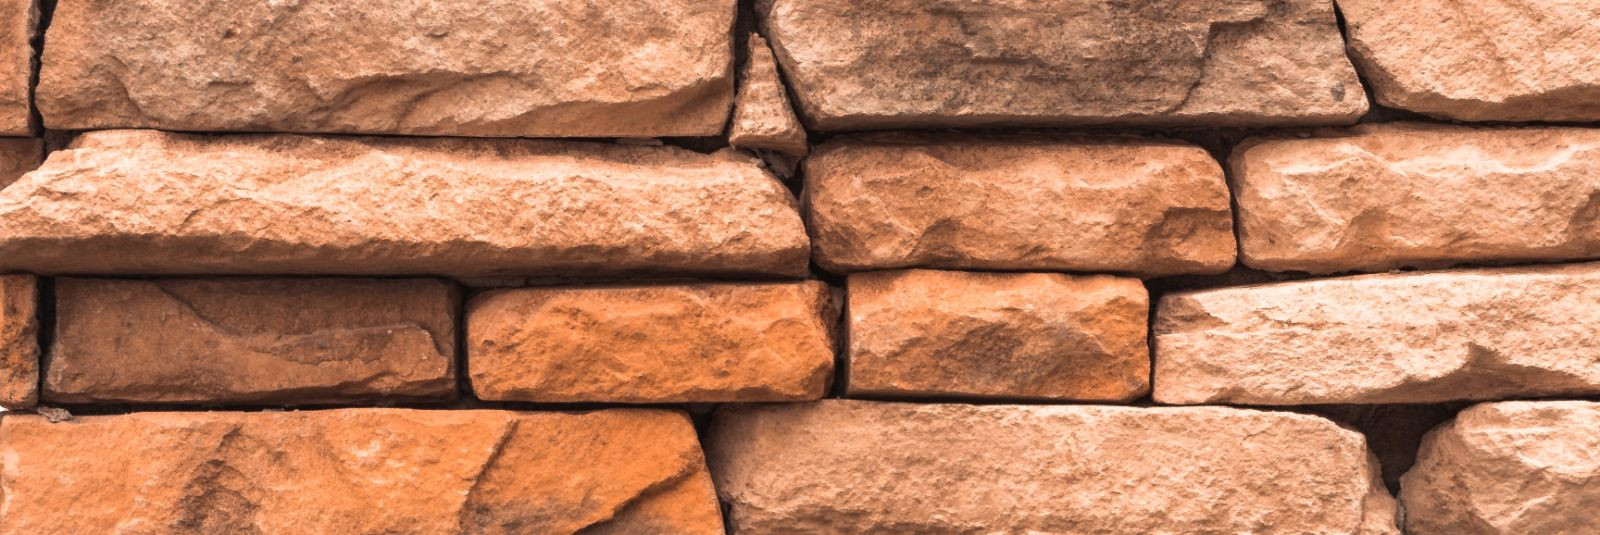 Müüride ladumine on palju enamat kui lihtsalt kivide või telliste paigutamine üksteise peale. See on kunst ja inseneritöö ühendamine, et luua vastupidavaid, fun